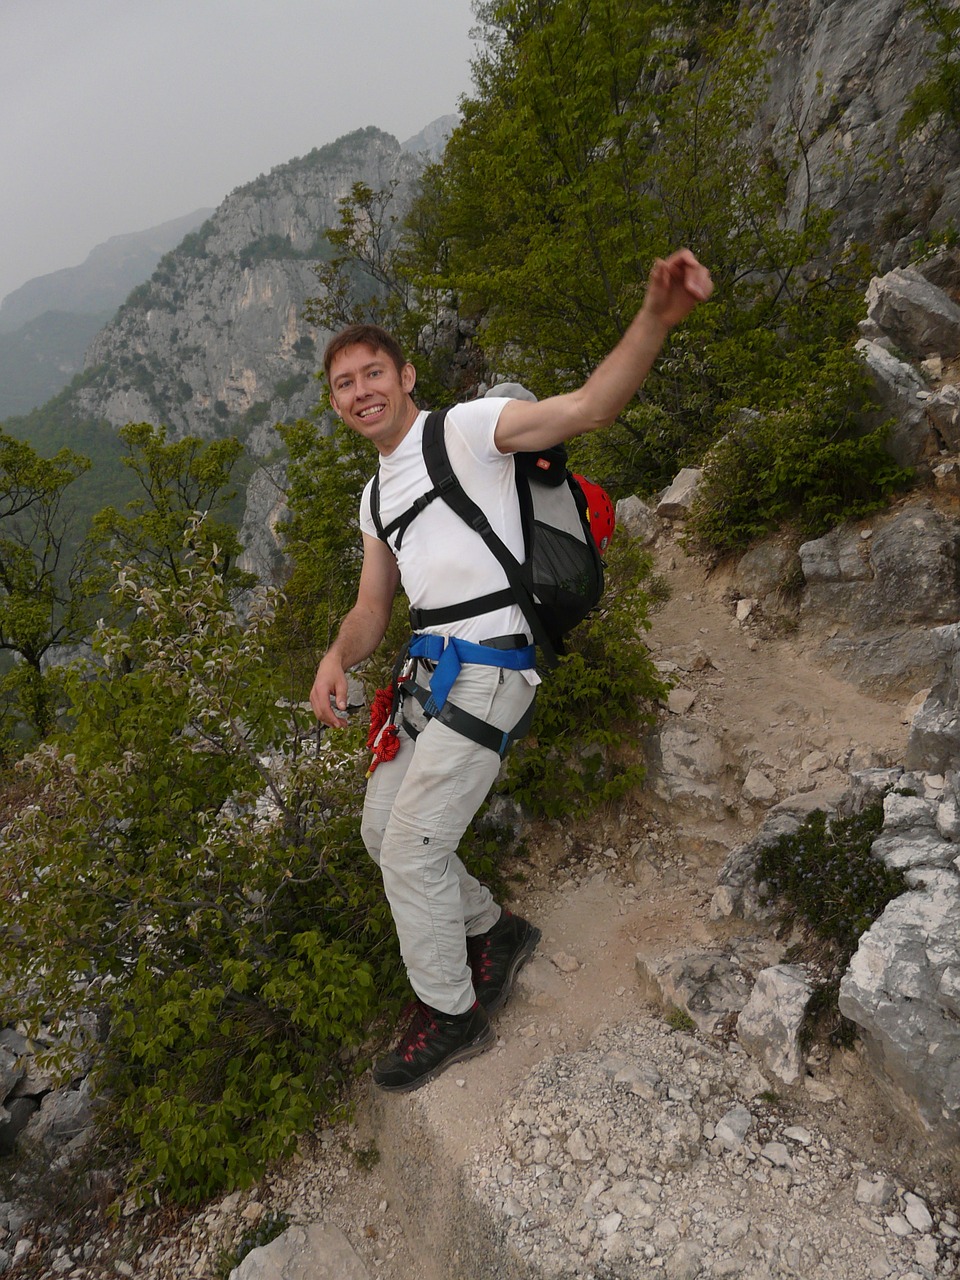 mountaineer hiking fun free photo